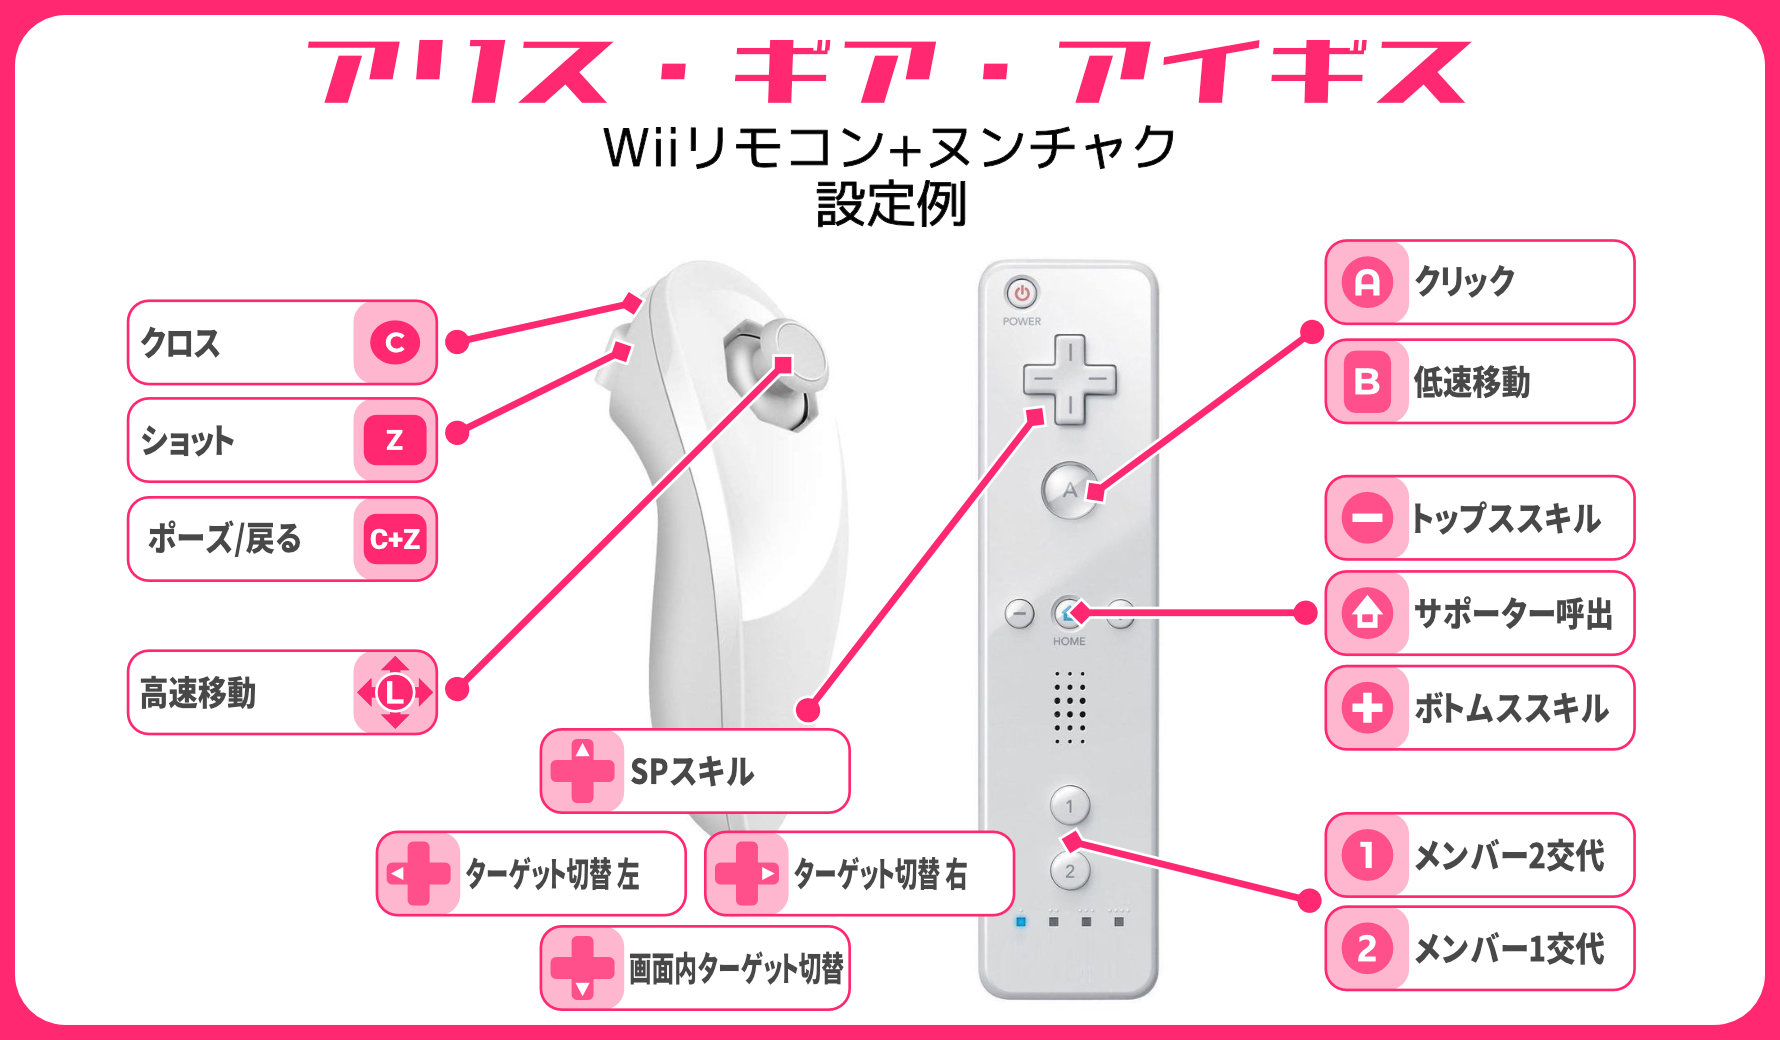 おっさん Wiiリモコン をwindows10にbluetoothでペアリングして Glovepie Bluetooth機器用のjoytokeyみたいなソフト 上にて各キーを設定してます 実際に Wiiで遊ぶ時と同じようにリモコンを向けるだけでマウスカーソルも動かせるので これで自在にフリック